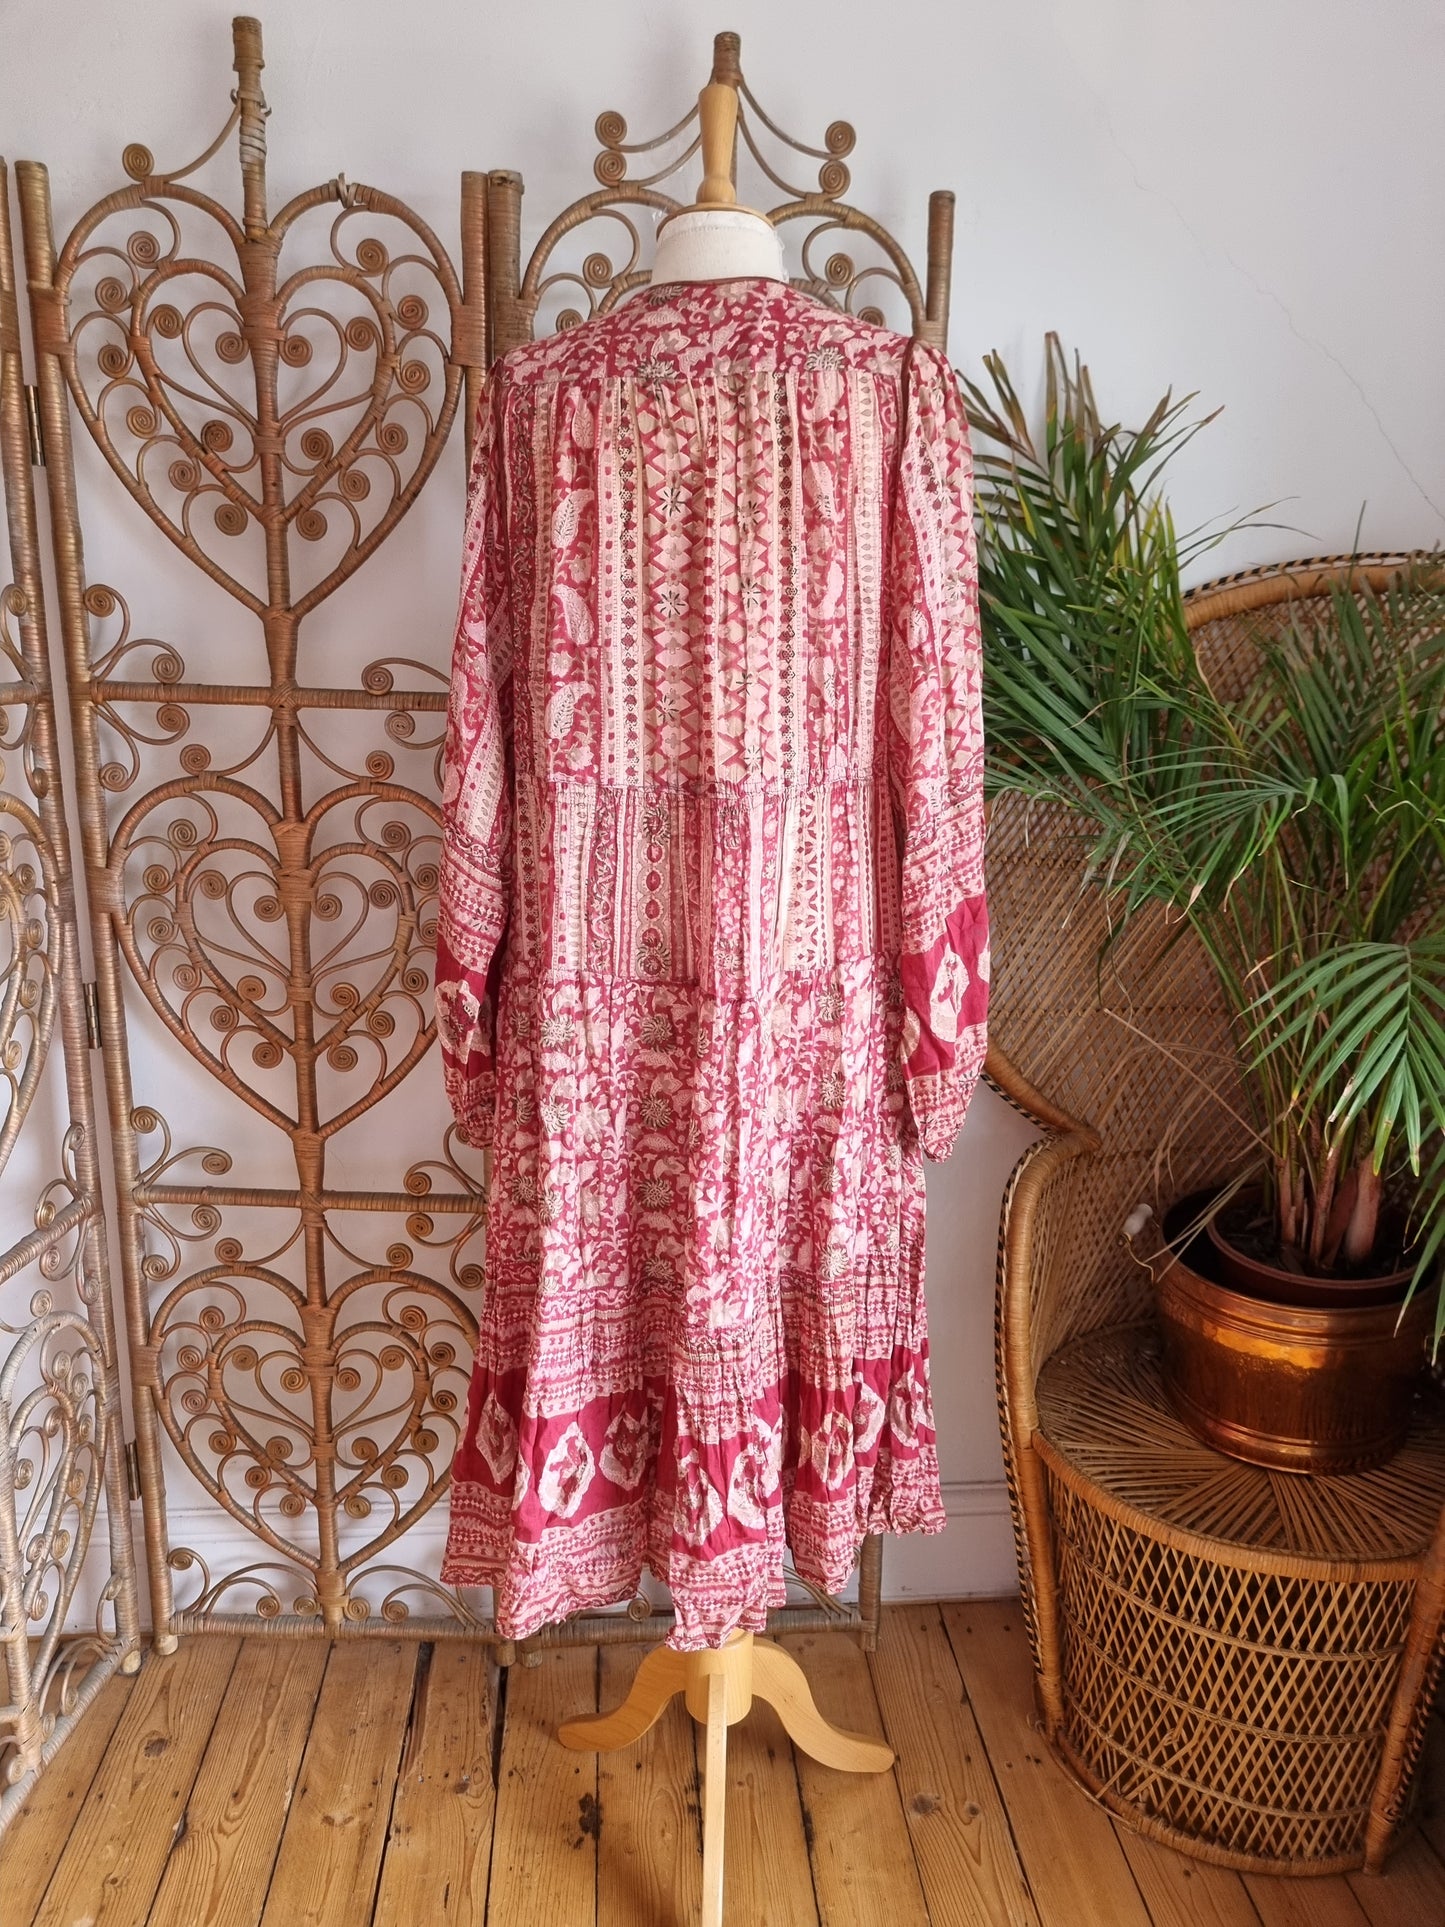 Vintage Phool Indian dress